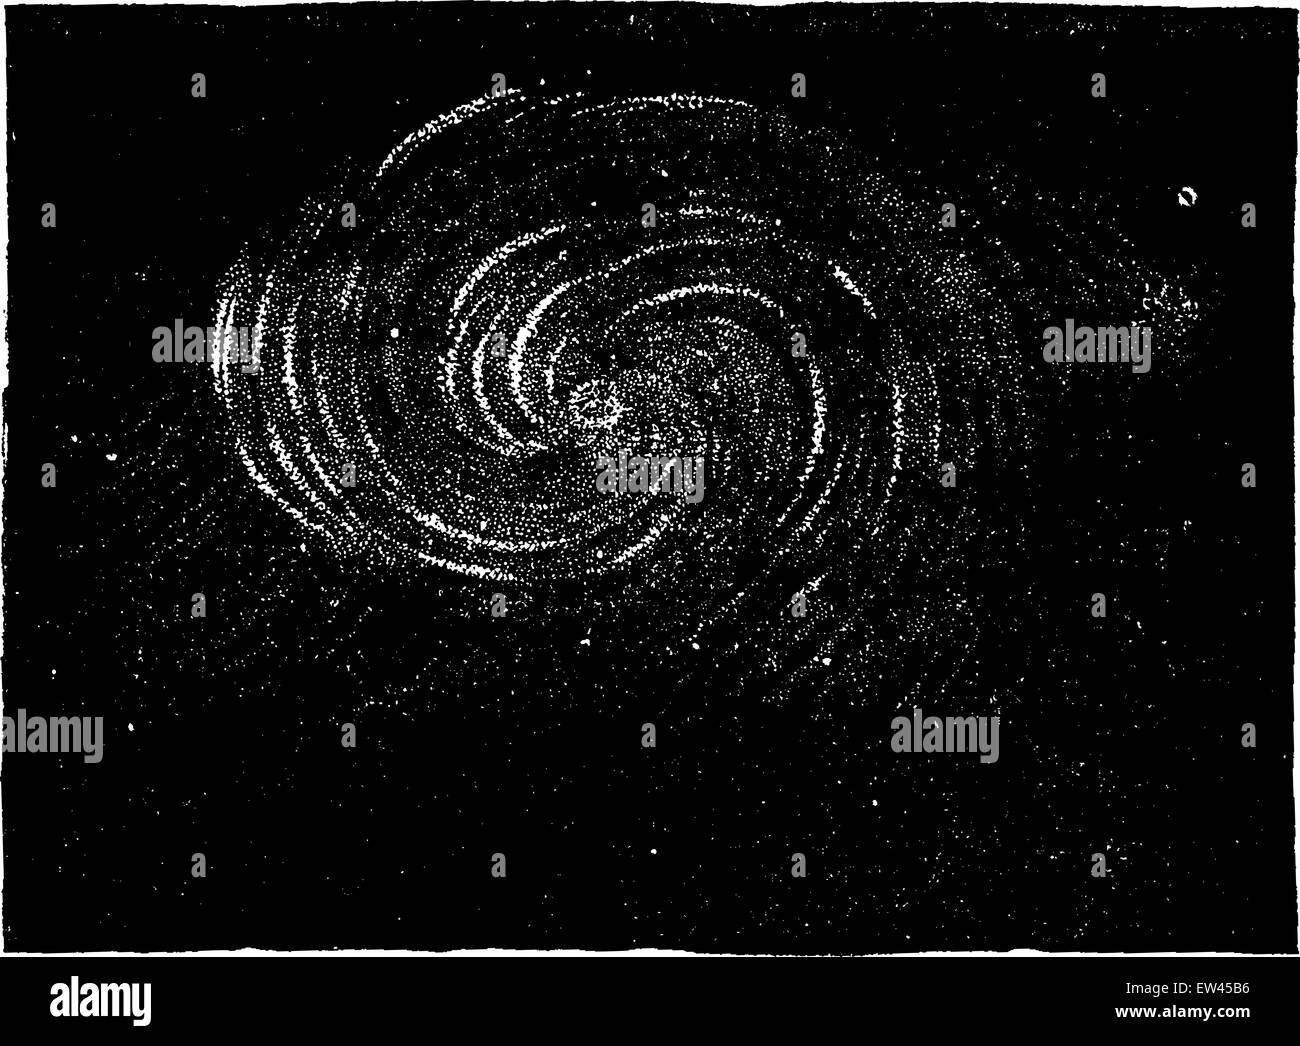 Die Spirale Nebel im Sternbild Jagdhunde, zeigt das Ergebnis der inneren Bewegungen, Vintage eingravierten Abbildung. Erde, bevor sich der Mensch - 1886. Stock Vektor